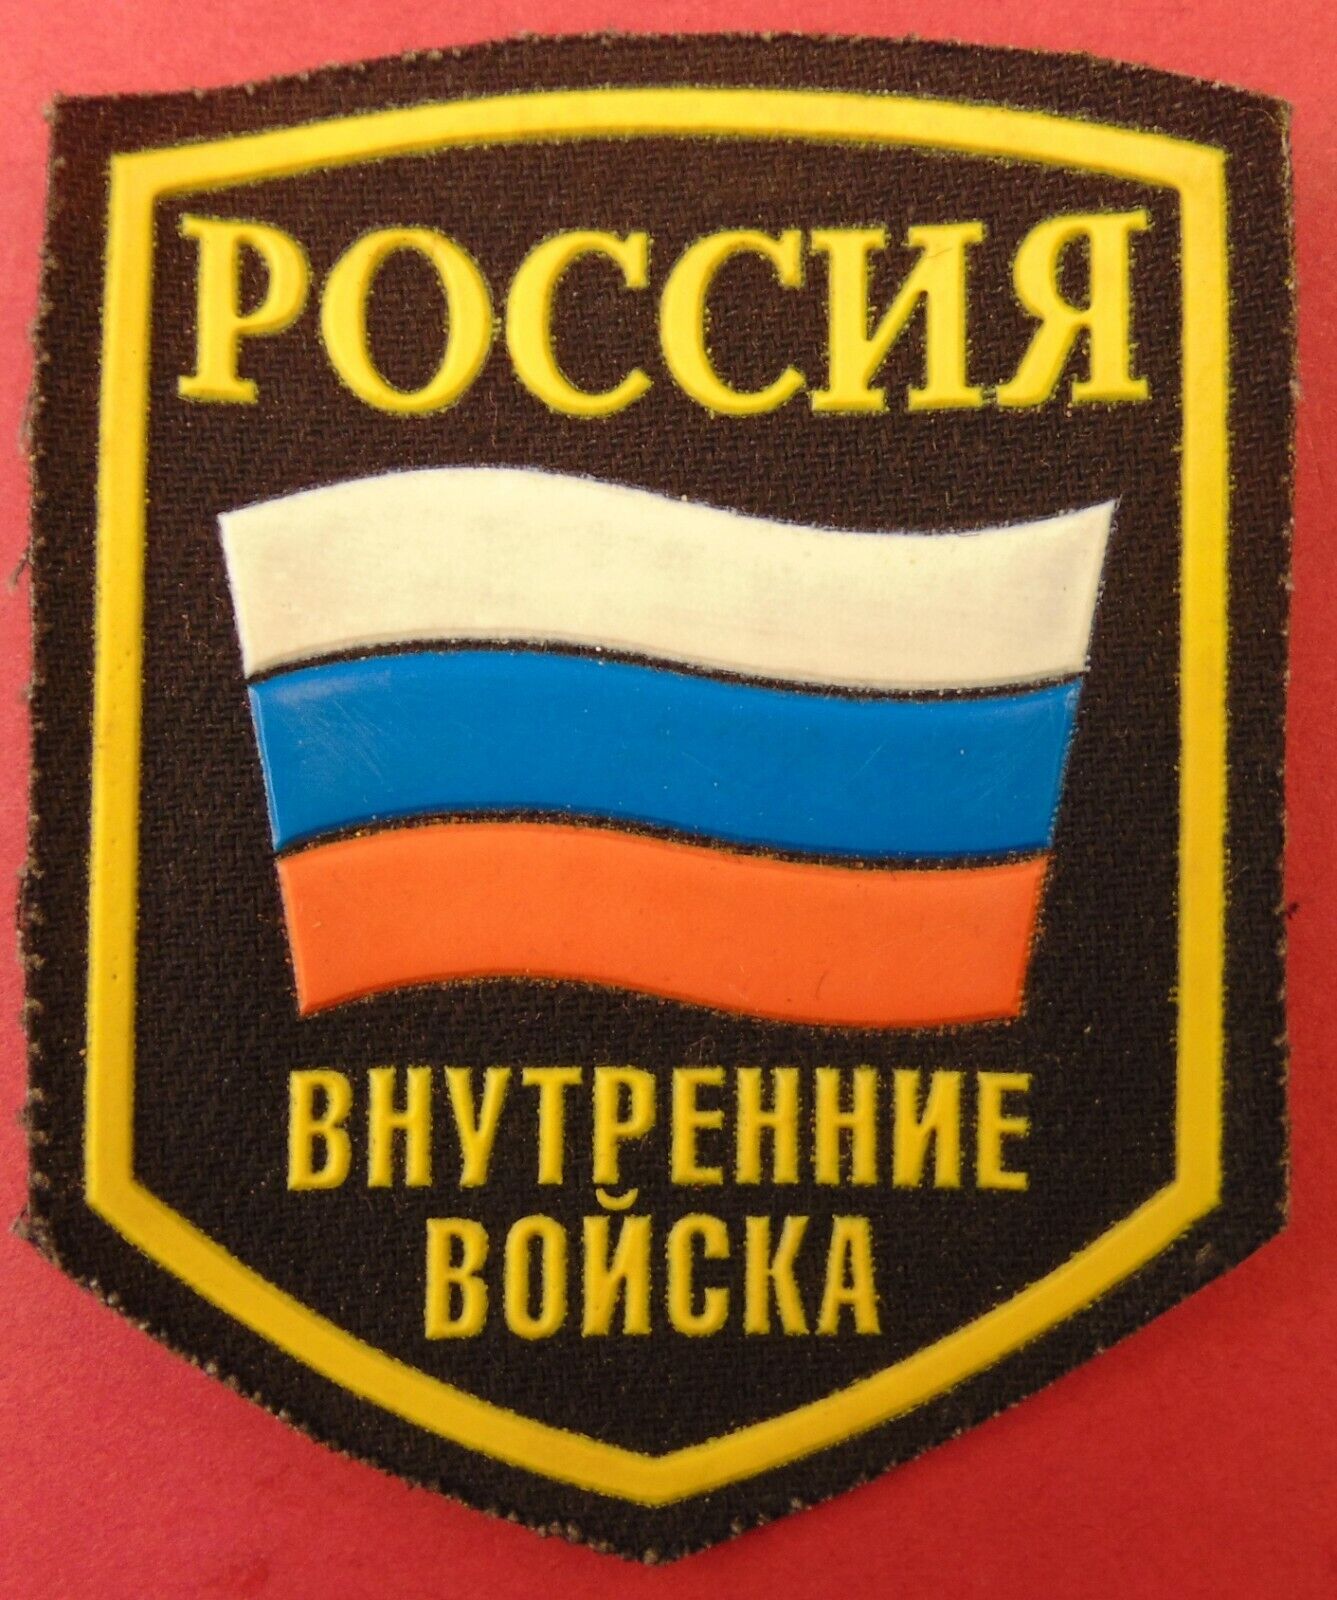 Russian MVD Internal Army Sleeve Patch Flag Emblem Uniform Badge Insignia ORIGNL